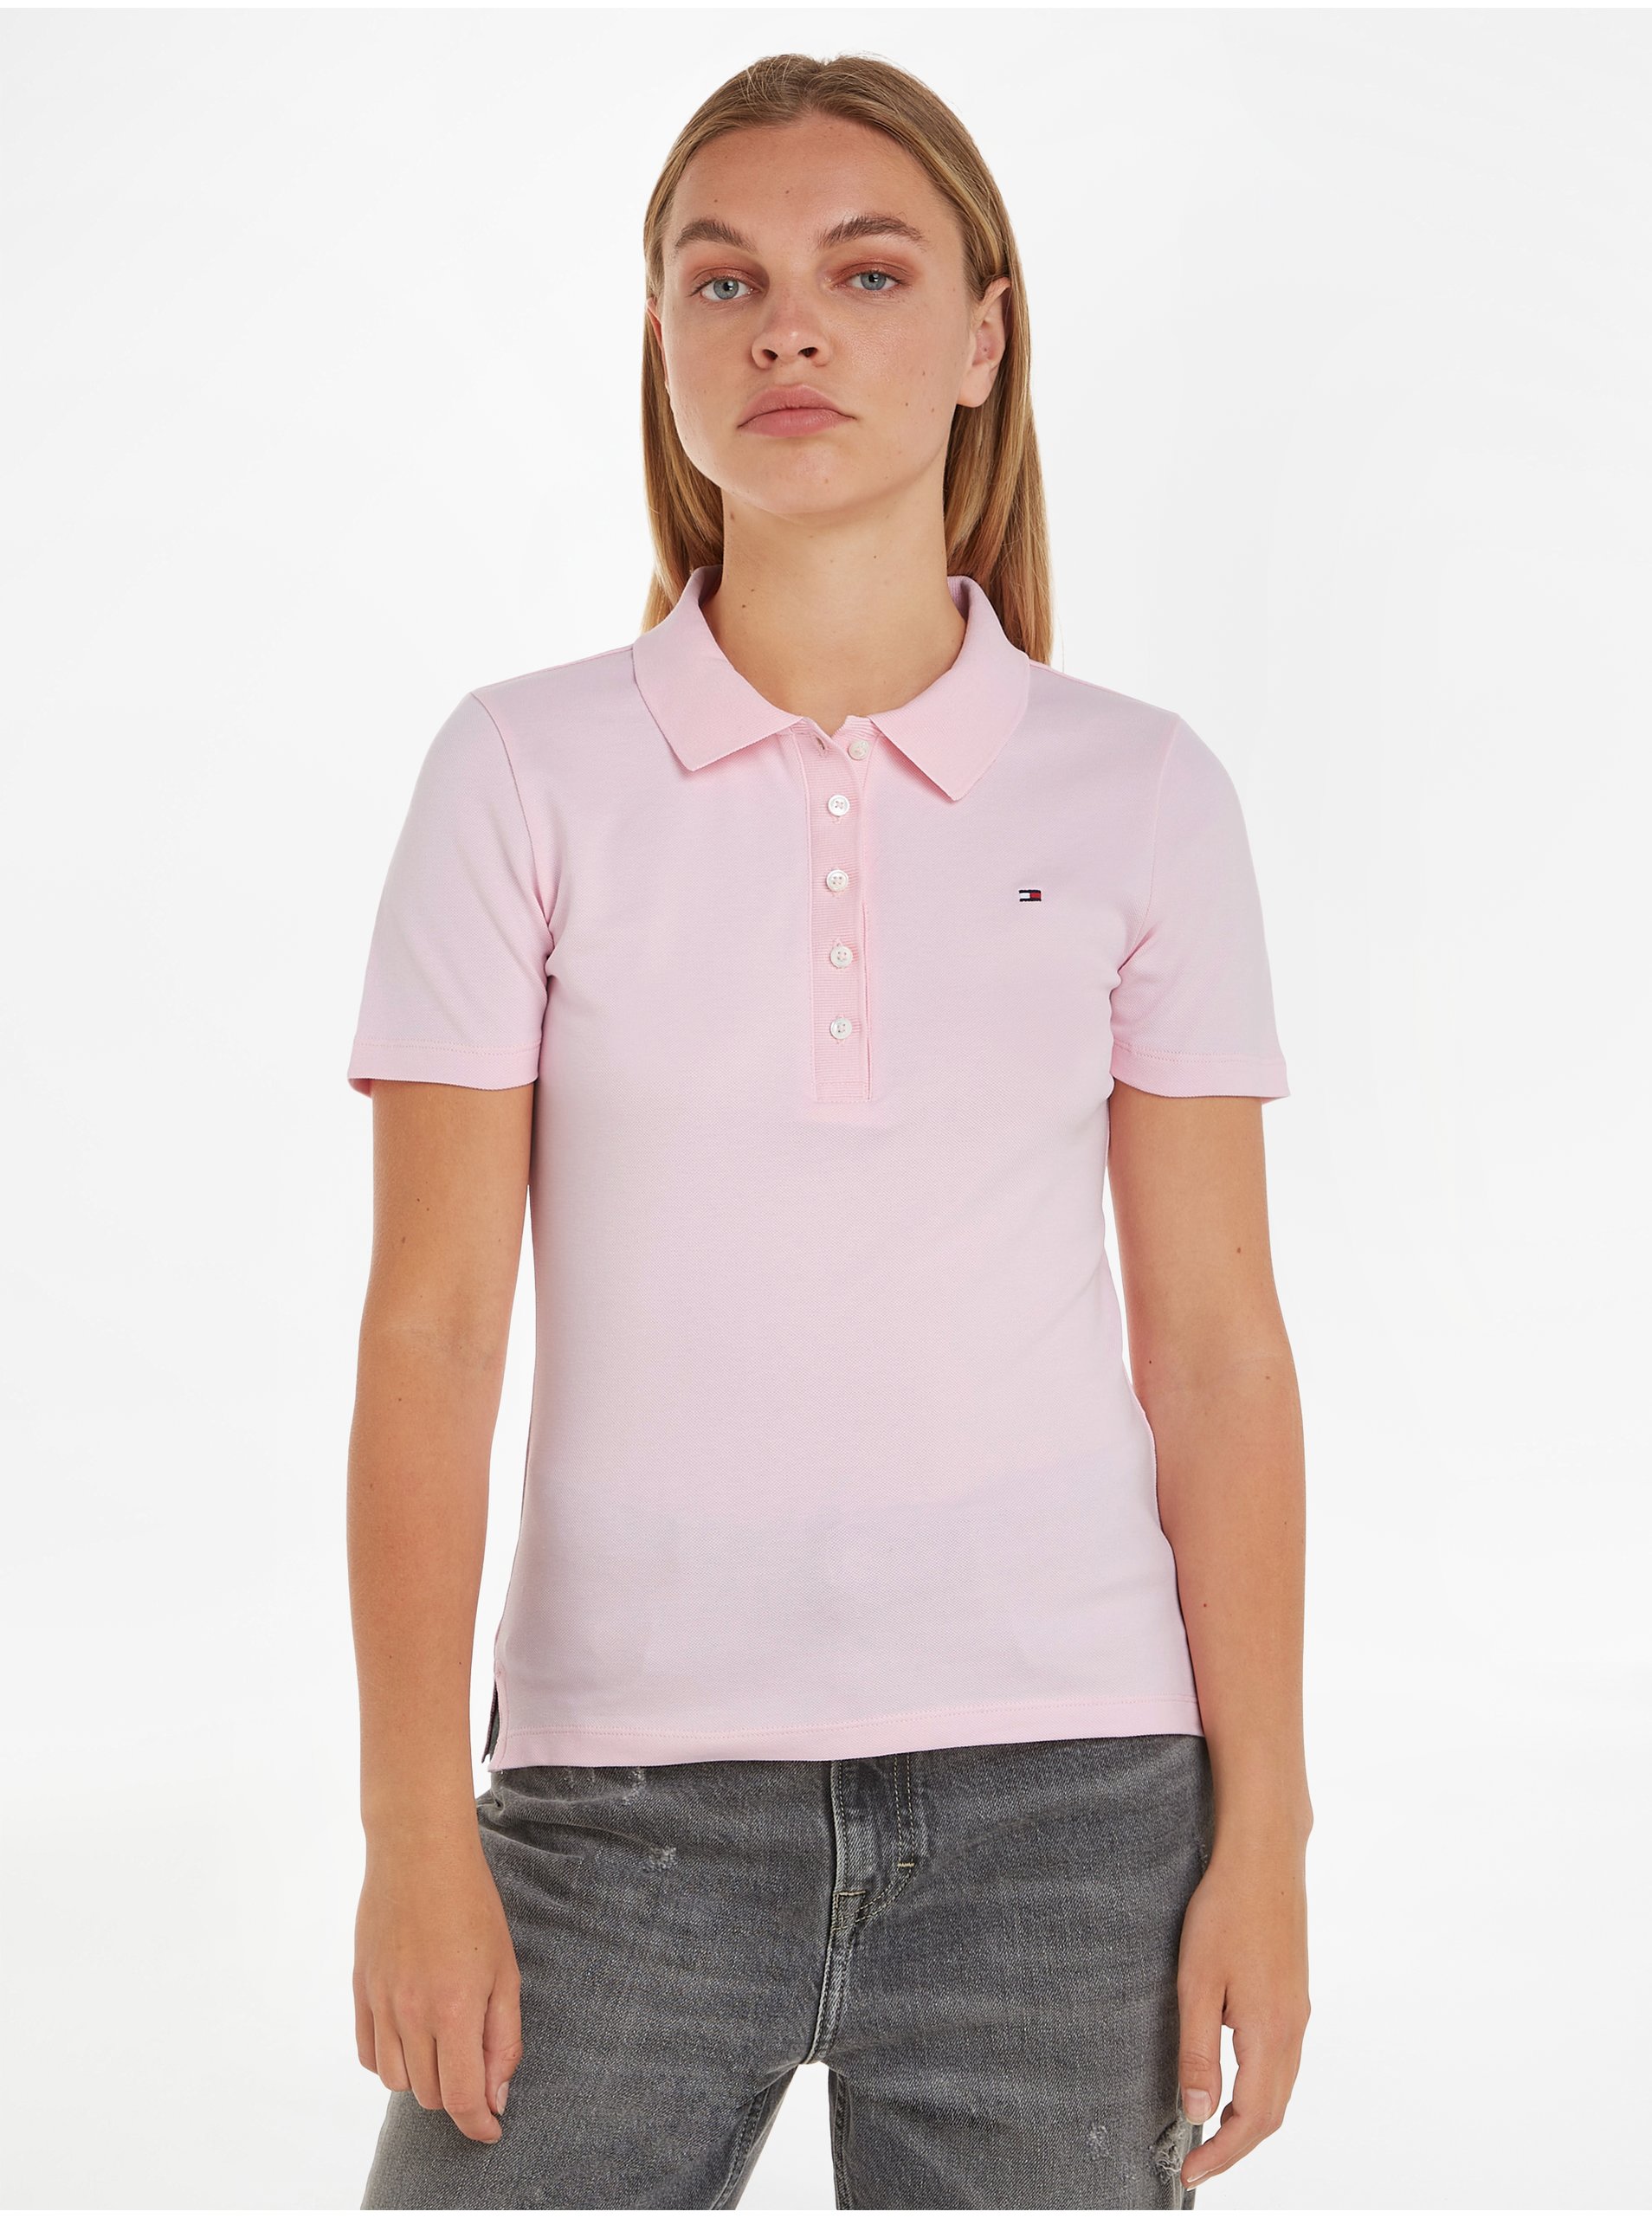 E-shop Světle růžové dámské polo tričko Tommy Hilfiger 1985 Pique